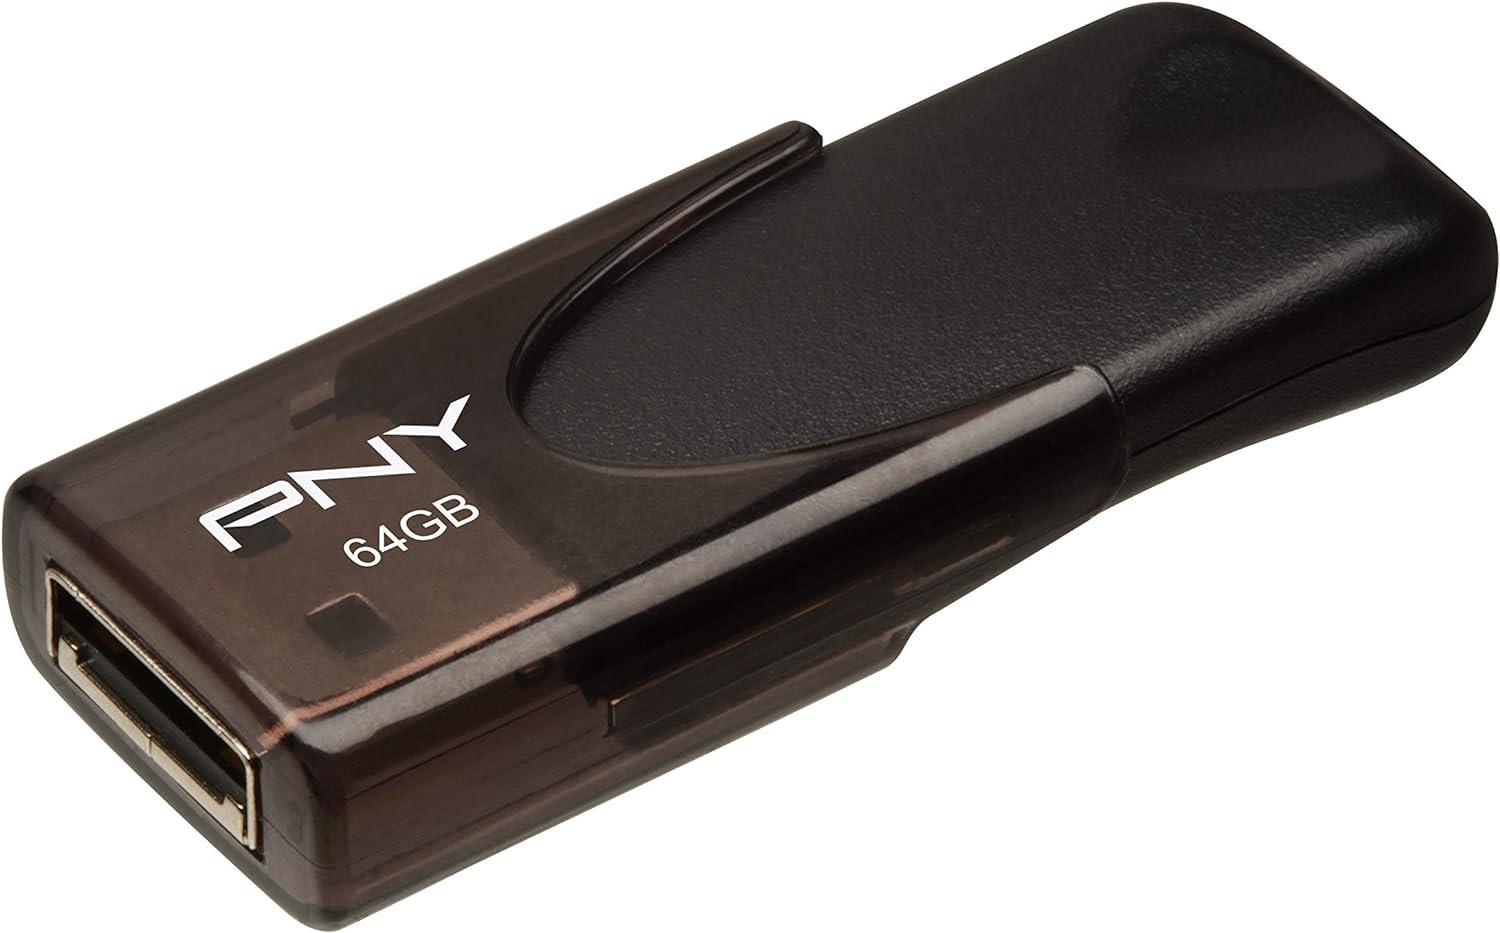 64GB PNY Attache 4 USB 2.0 Flash Drive for $4